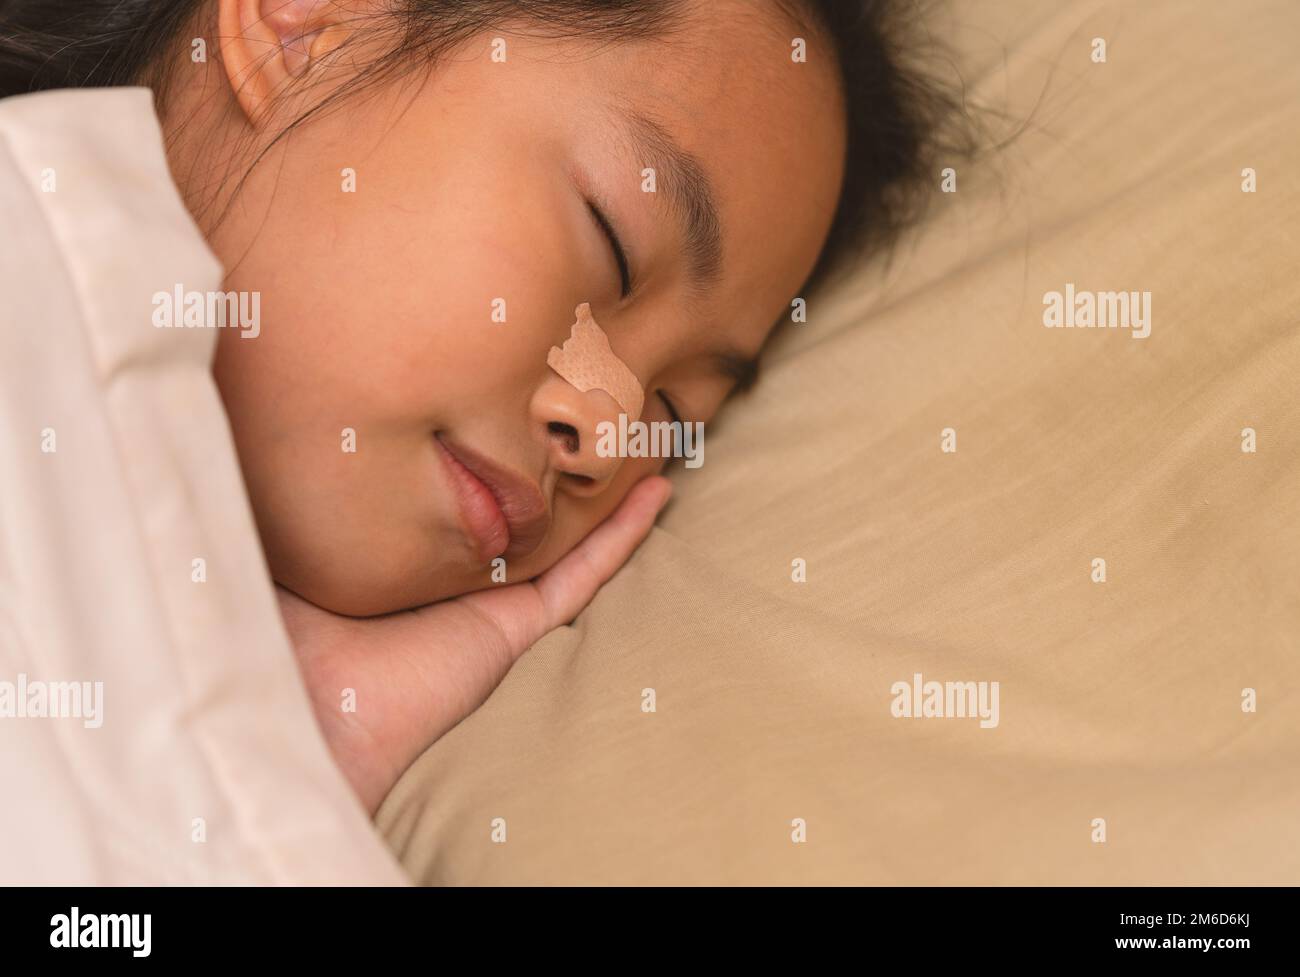 Ein asiatisches Mädchen schläft gut im Bett, dicht an der Seite ihres Gesichts auf dem Kissen, Nasenstreifen an der Nase. Asiatisches Mädchen im Alter von 8 oder 9 Jahren. B Stockfoto